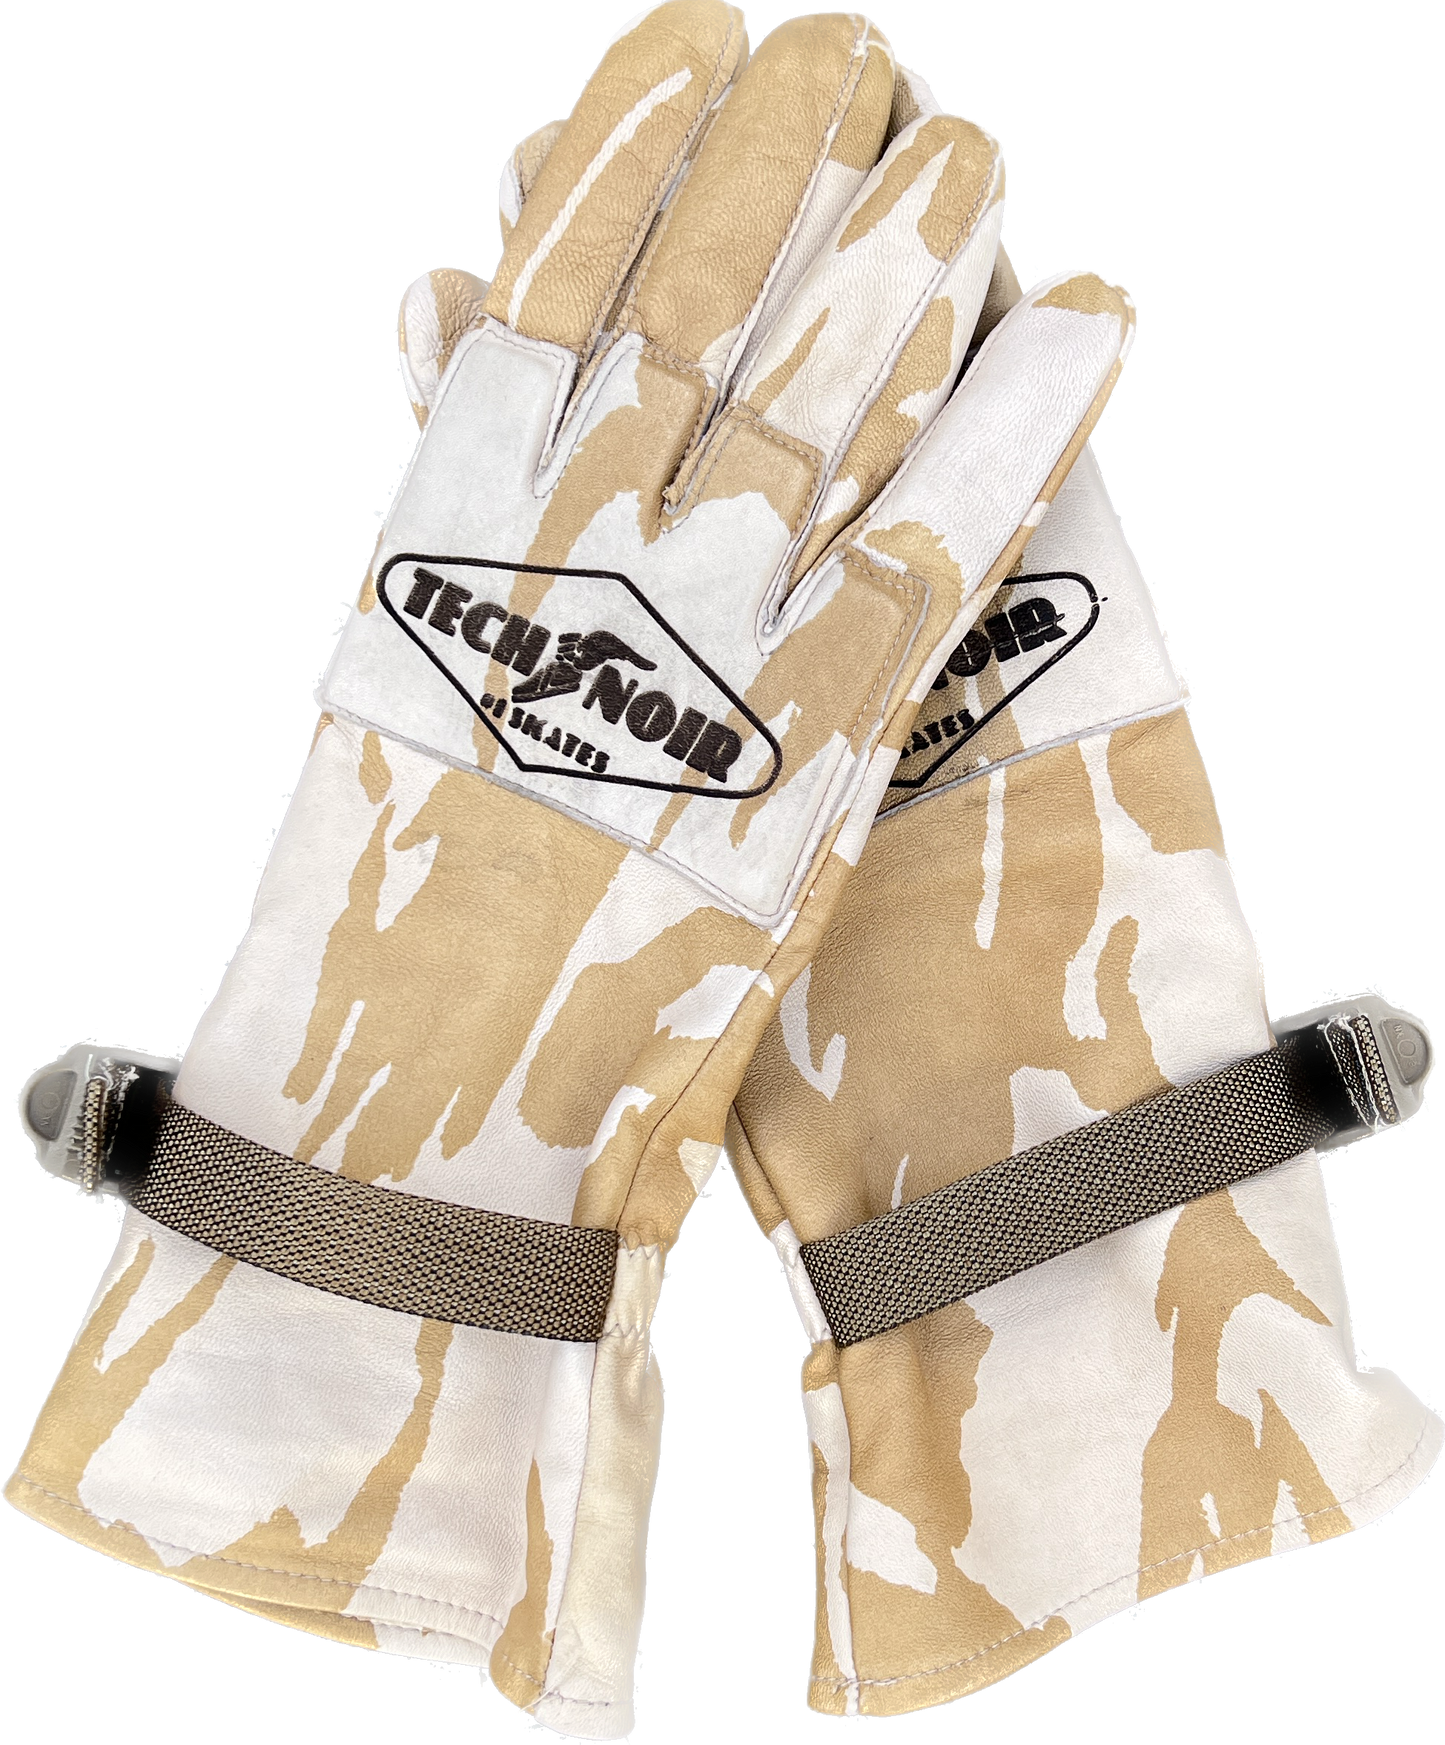 Tactical gloves camo